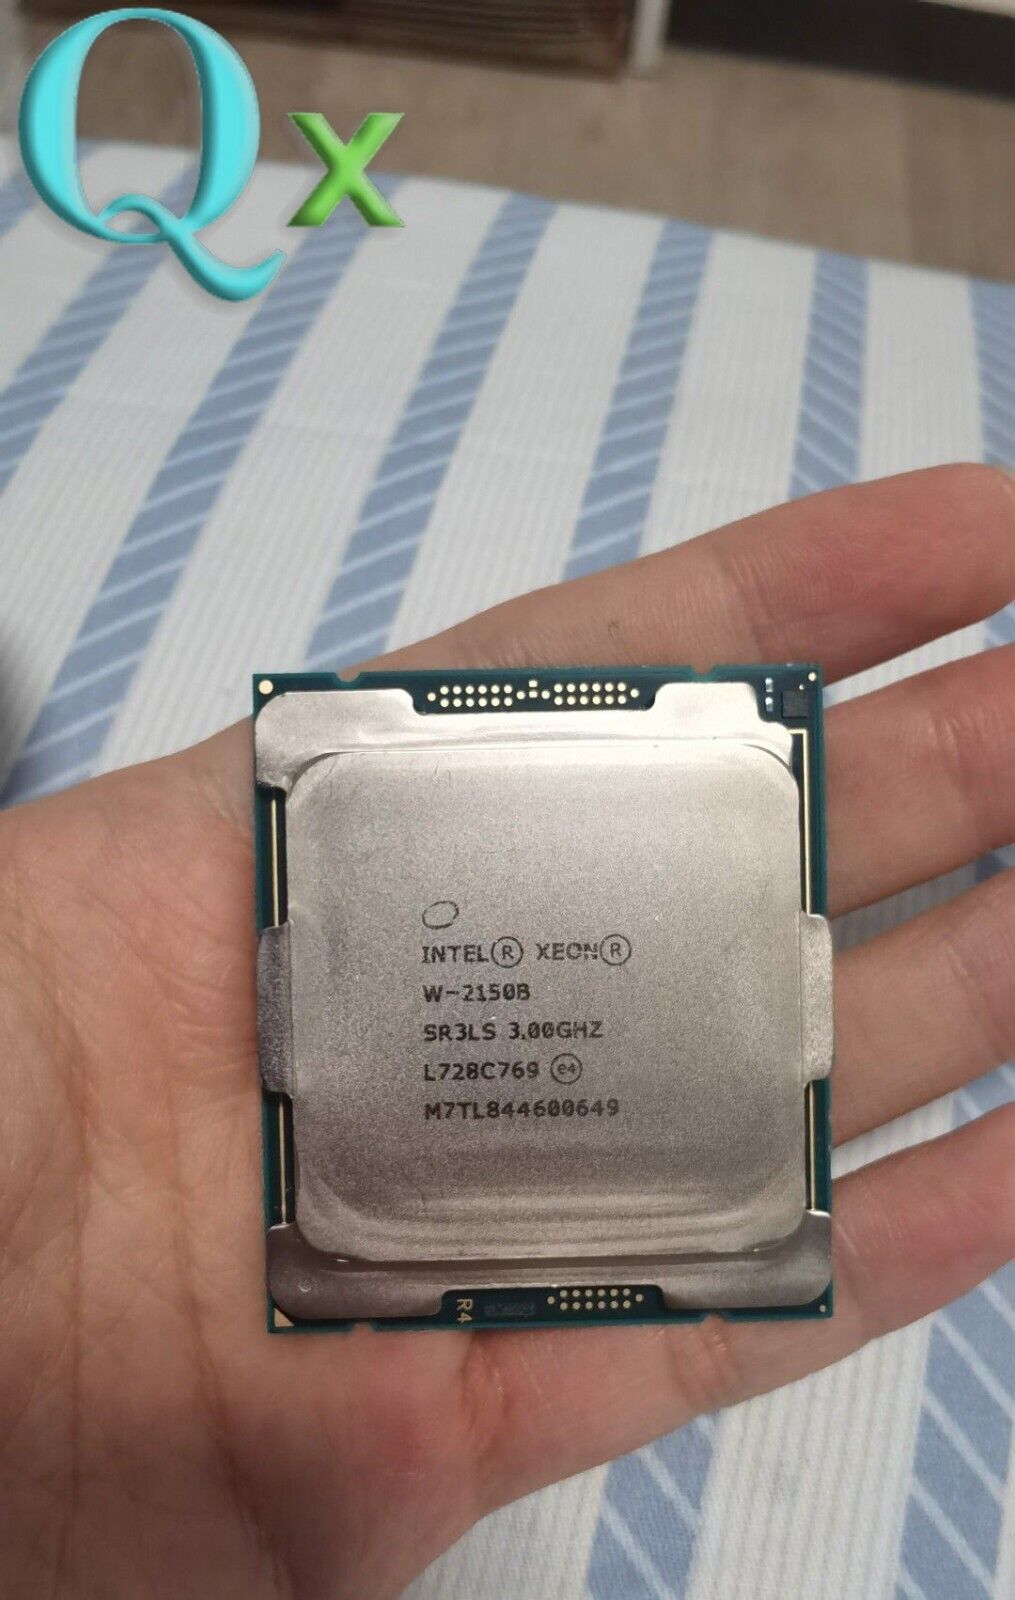 Intel Xeon W-2150B LGA-2066 C422 Server CPU Processor 3.00 GHz 10-Core SR3LS